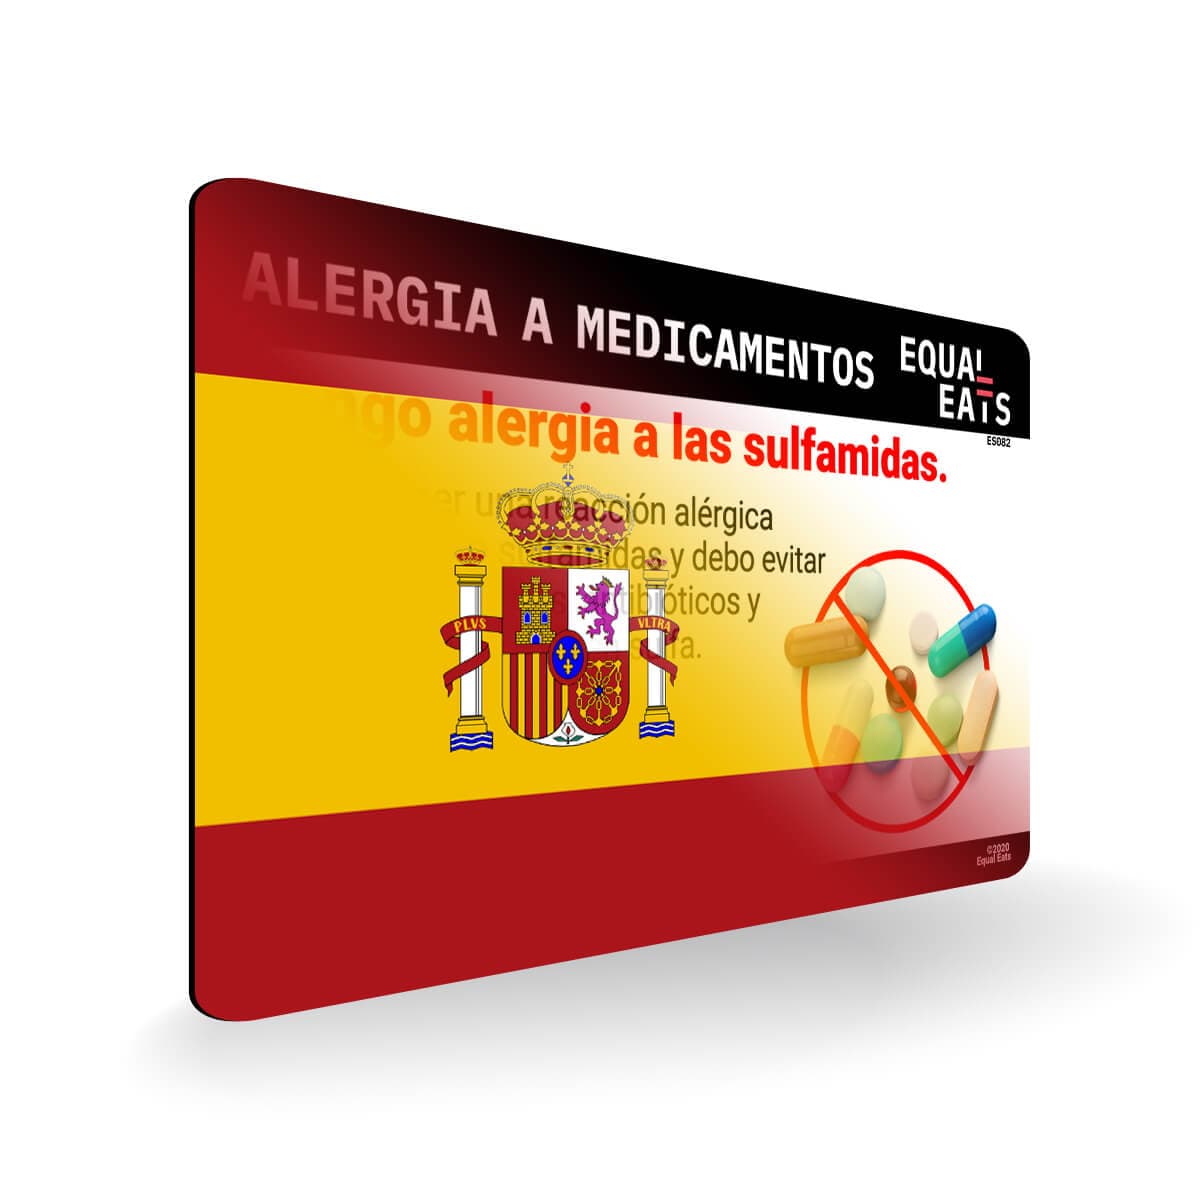 Sulfa Allergy in Spanish. Sulfa Medicine Allergy Card for Spain